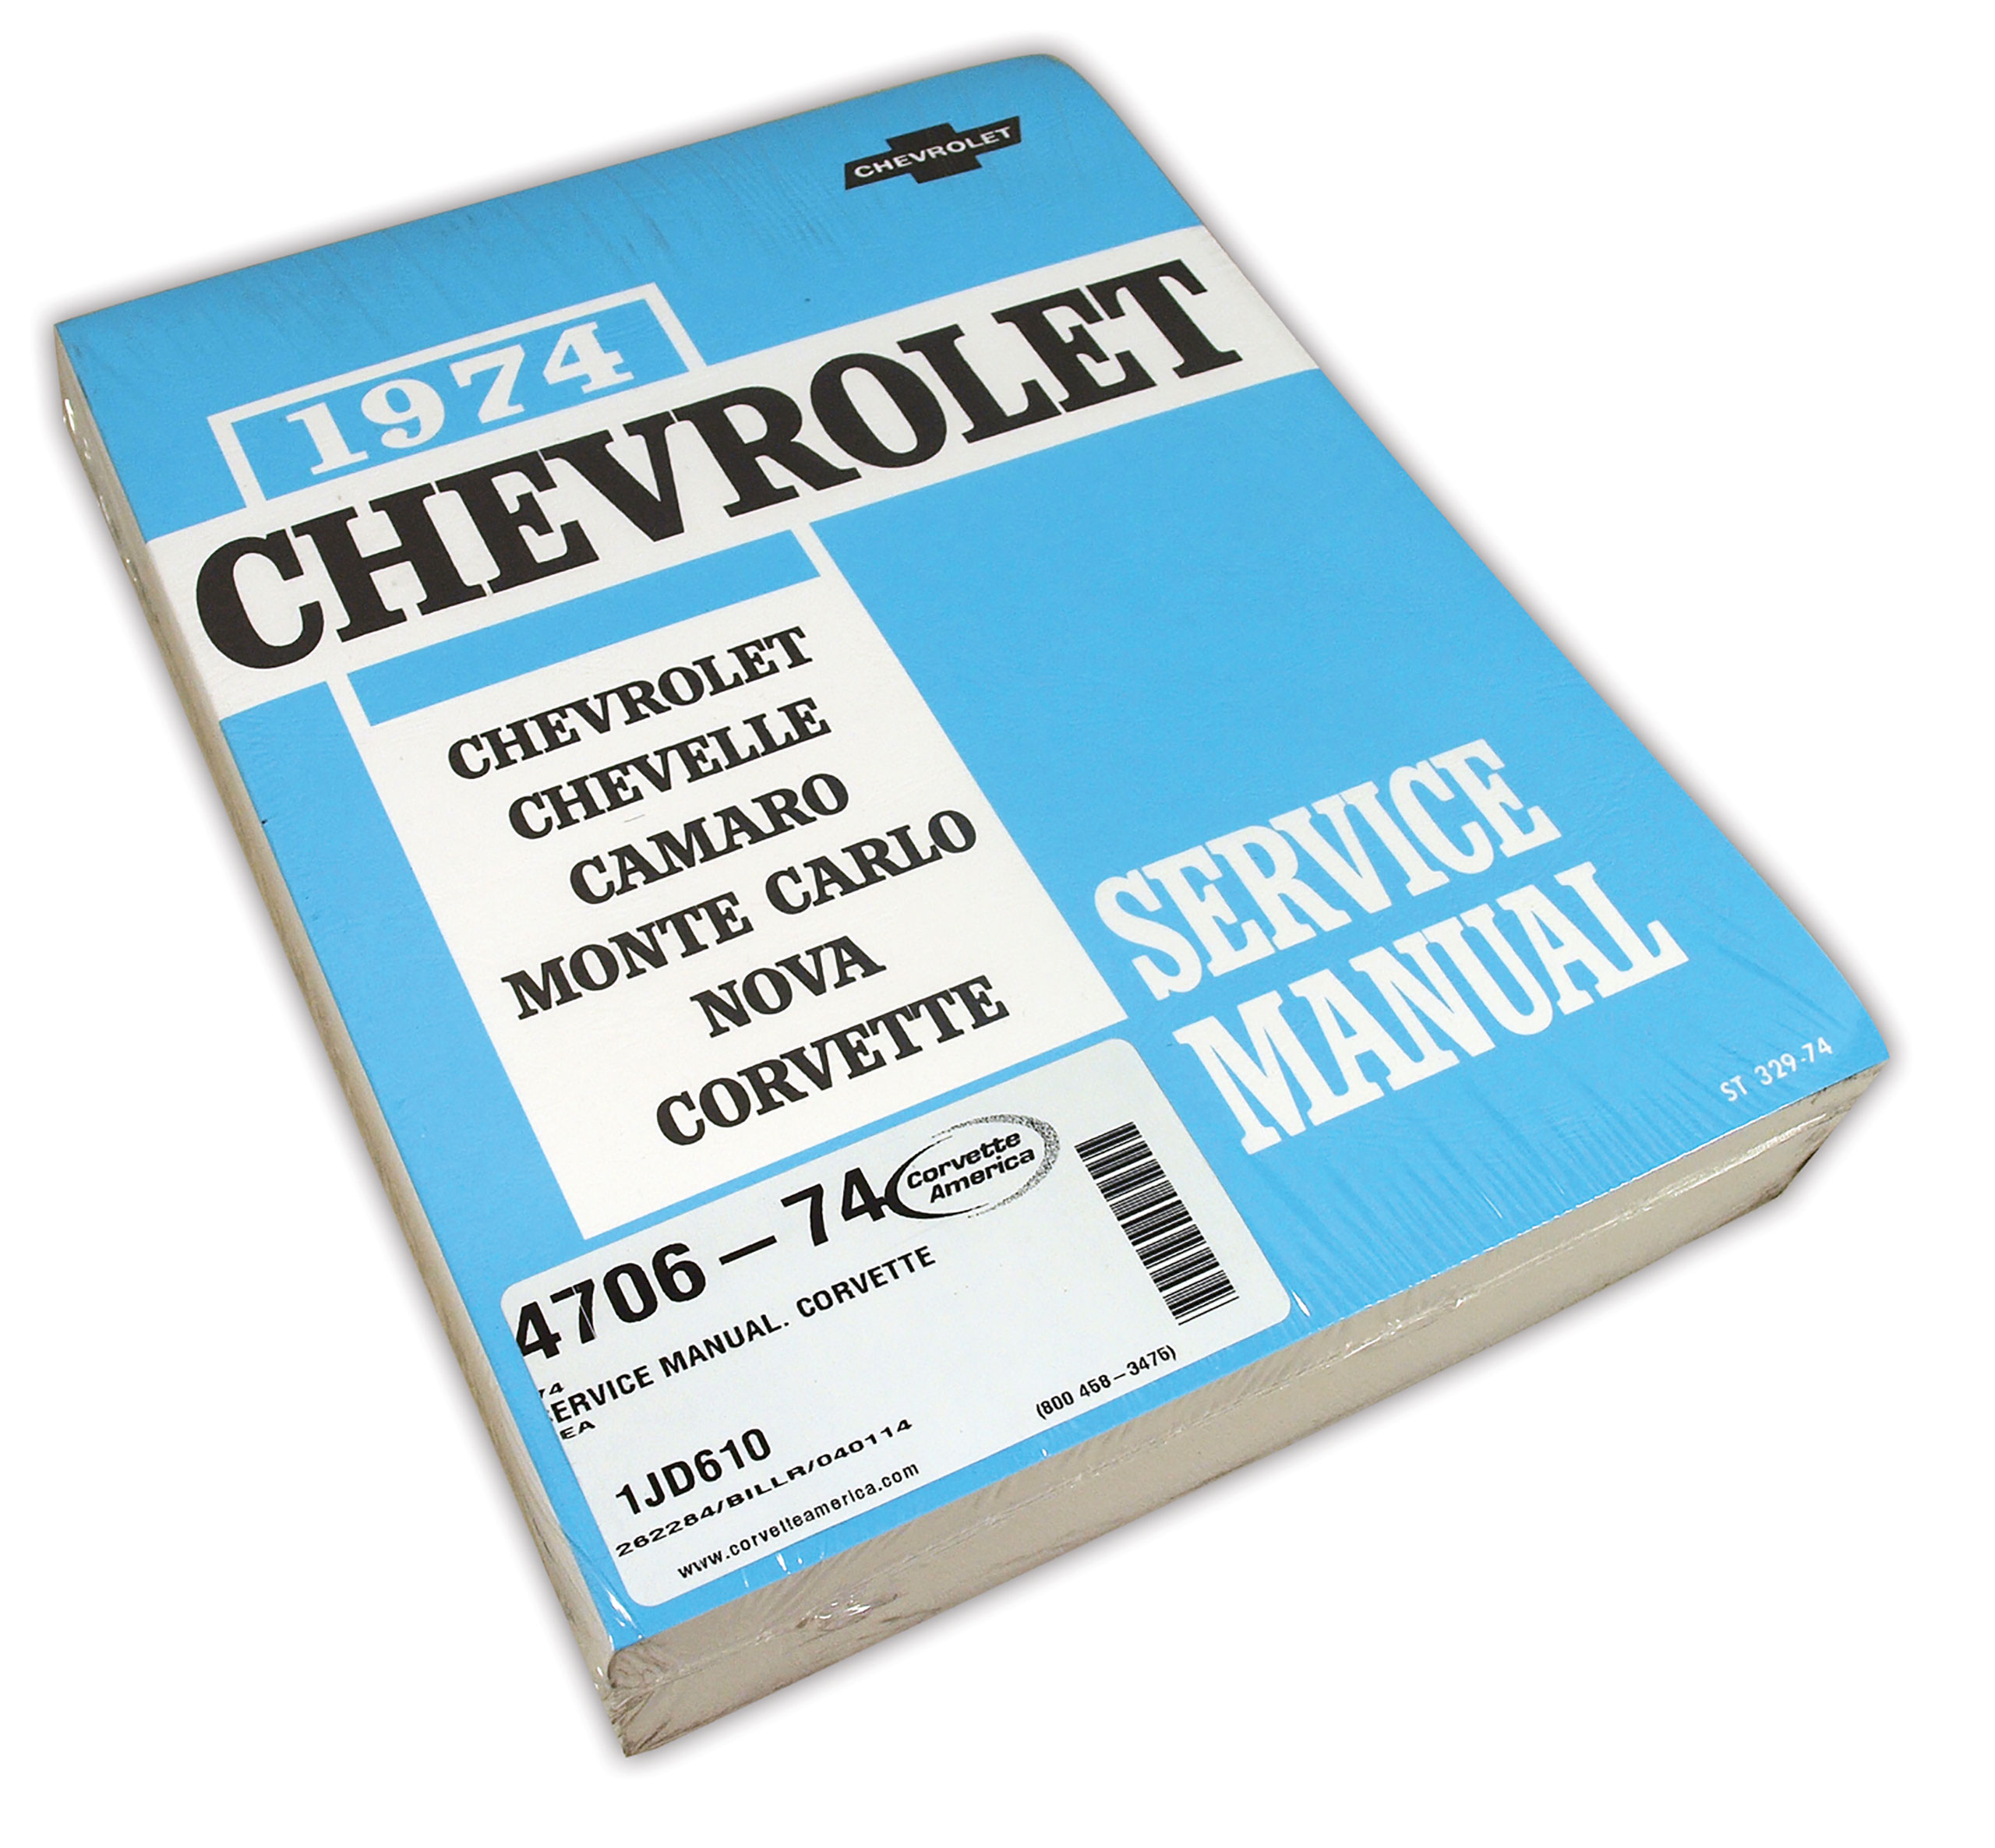 C3 1974 Chevrolet Corvette Service Manual. Corvette - Auto Accessories of America